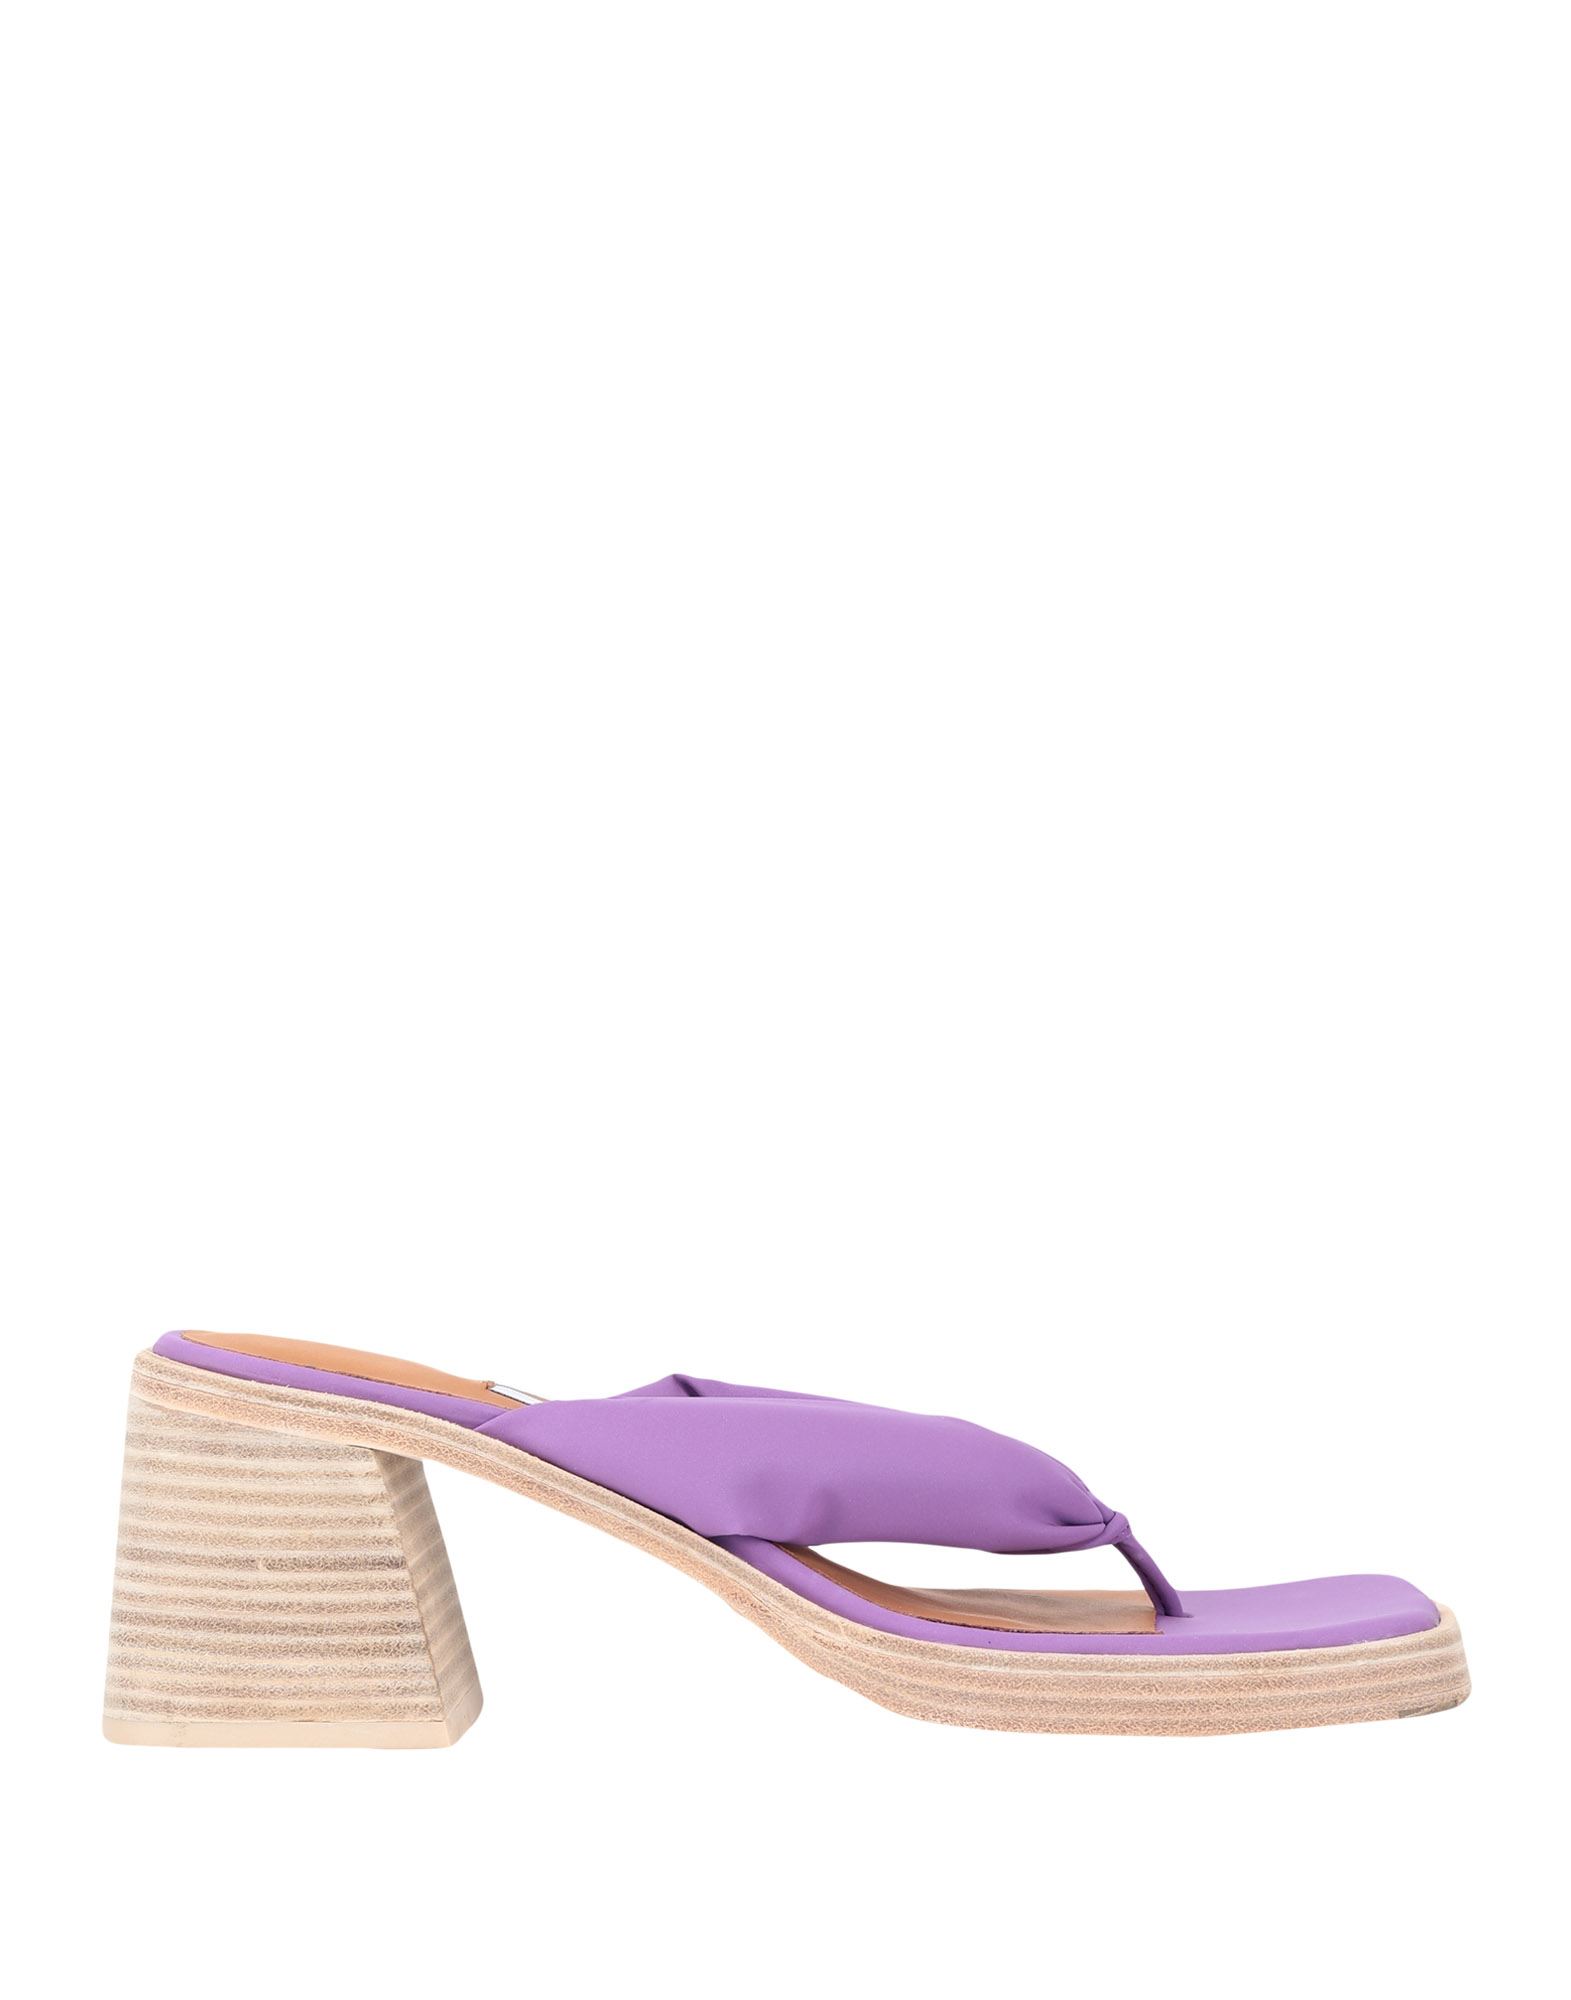 Shop Miista April Purple Reflective Woman Thong Sandal Light Purple Size 7.5 Soft Leather, Textile Fibers